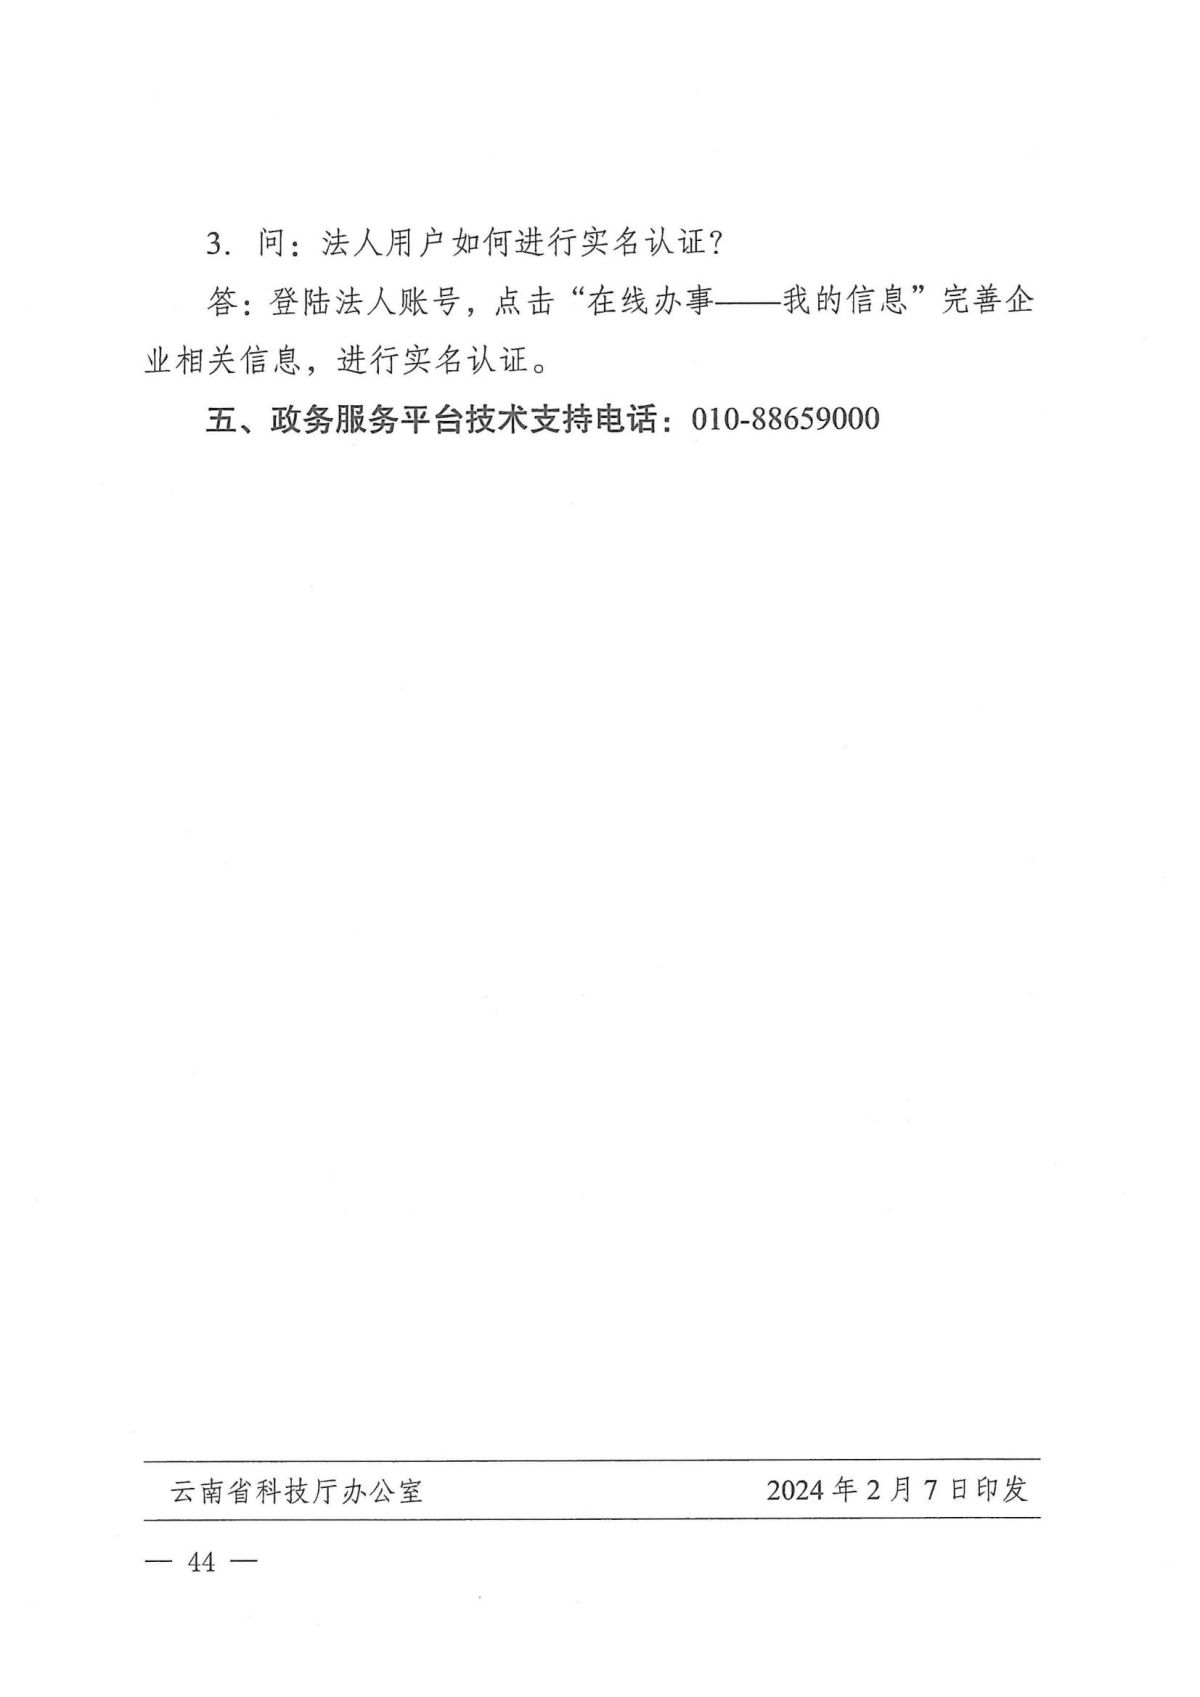 附件1：关于云南省2024年高新技术企业培育认定工作有关事项的通知_43.jpg